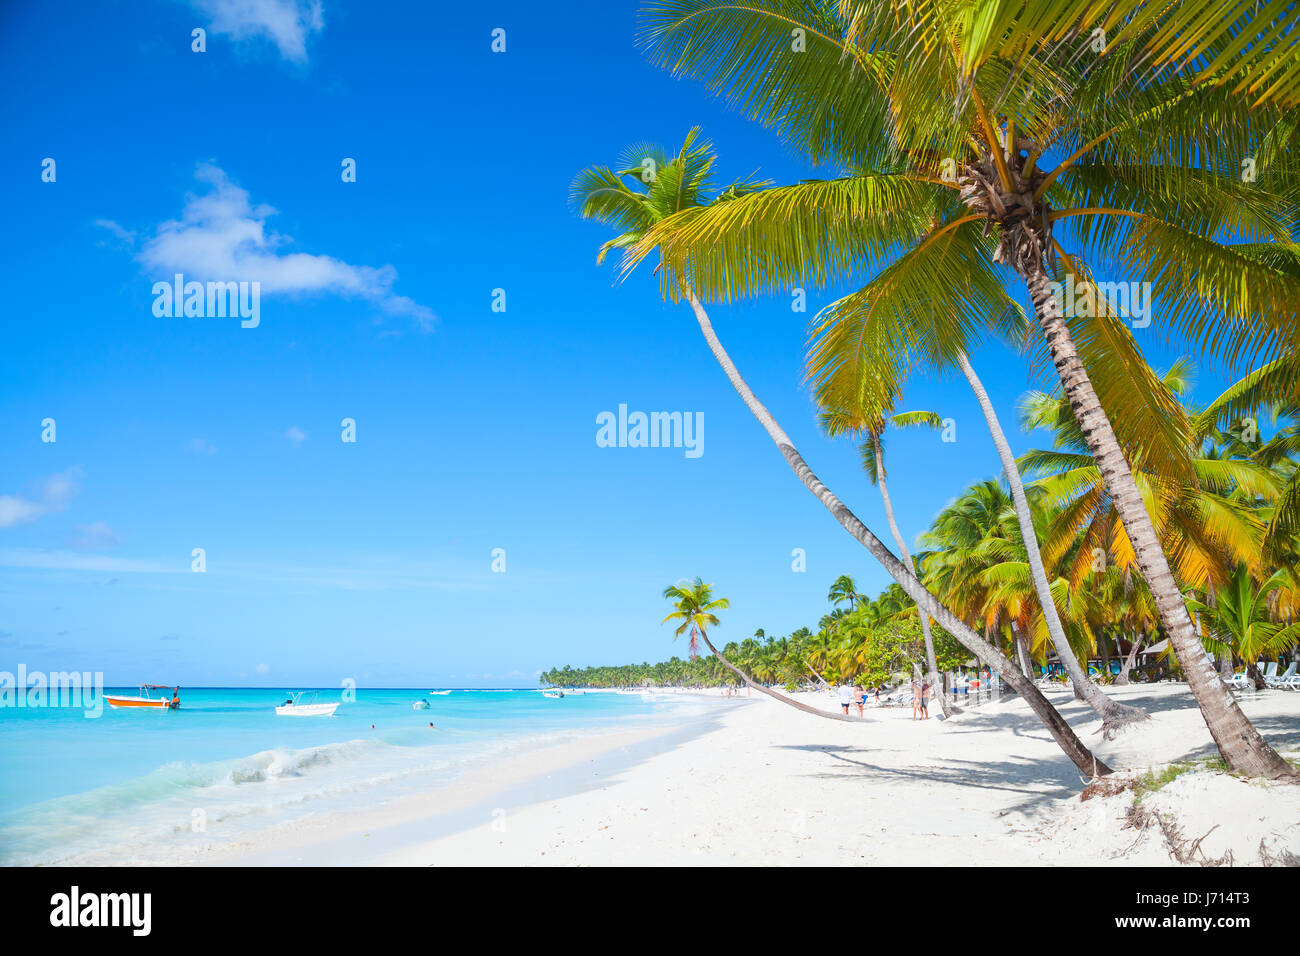 Paisaje con palmas de coco crecen en la playa de arena. Mar Caribe, República Dominicana, Costa de la isla Saona, el popular complejo turístico Foto de stock